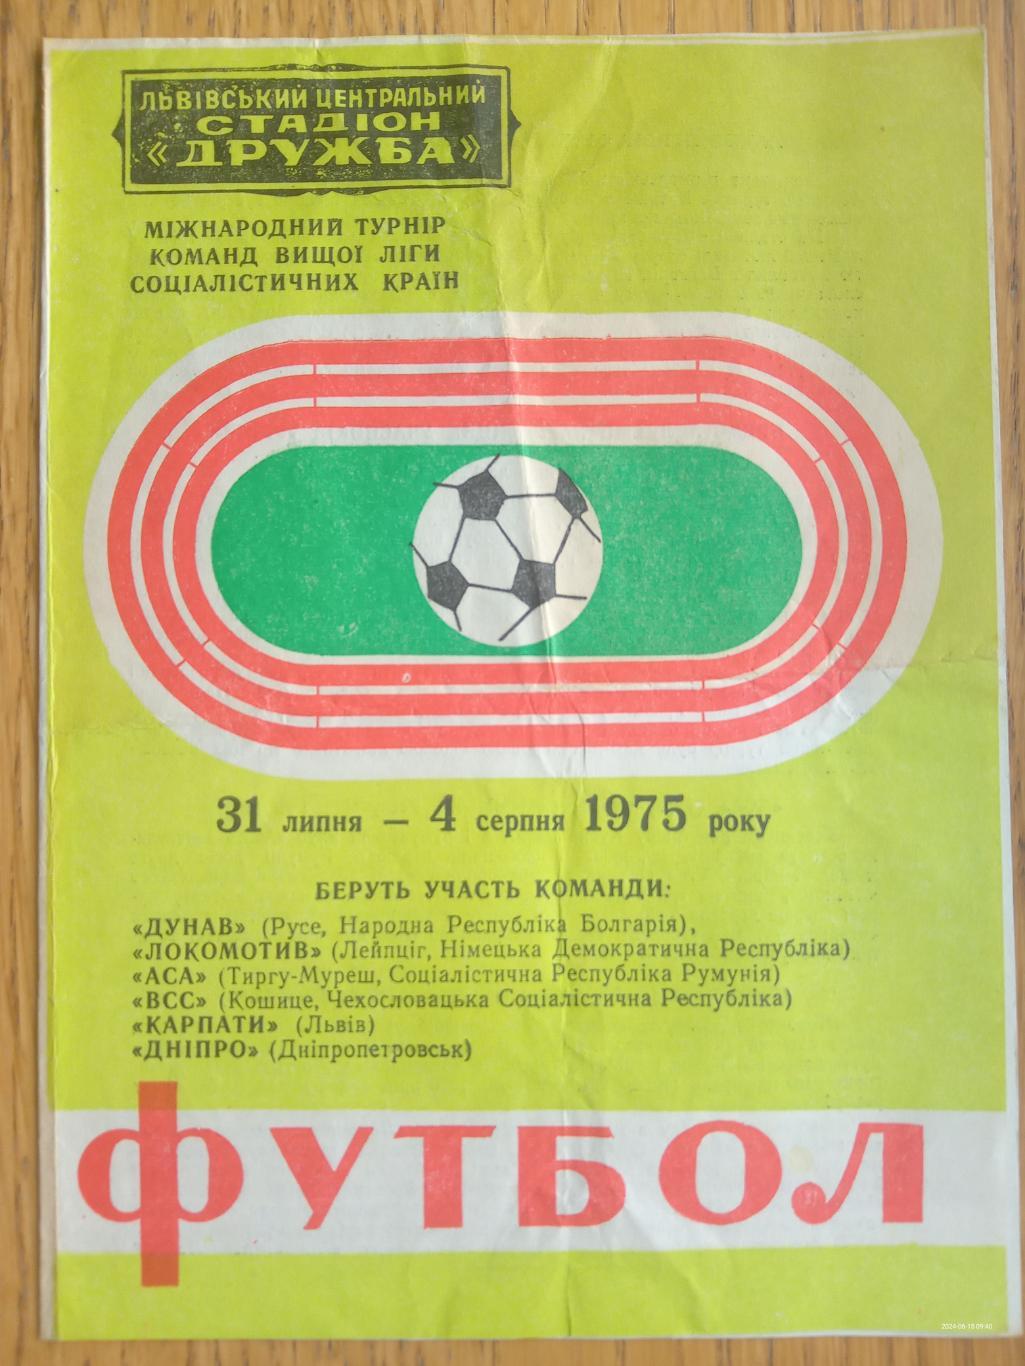 Міжнародний турнір. Львів. 1975.